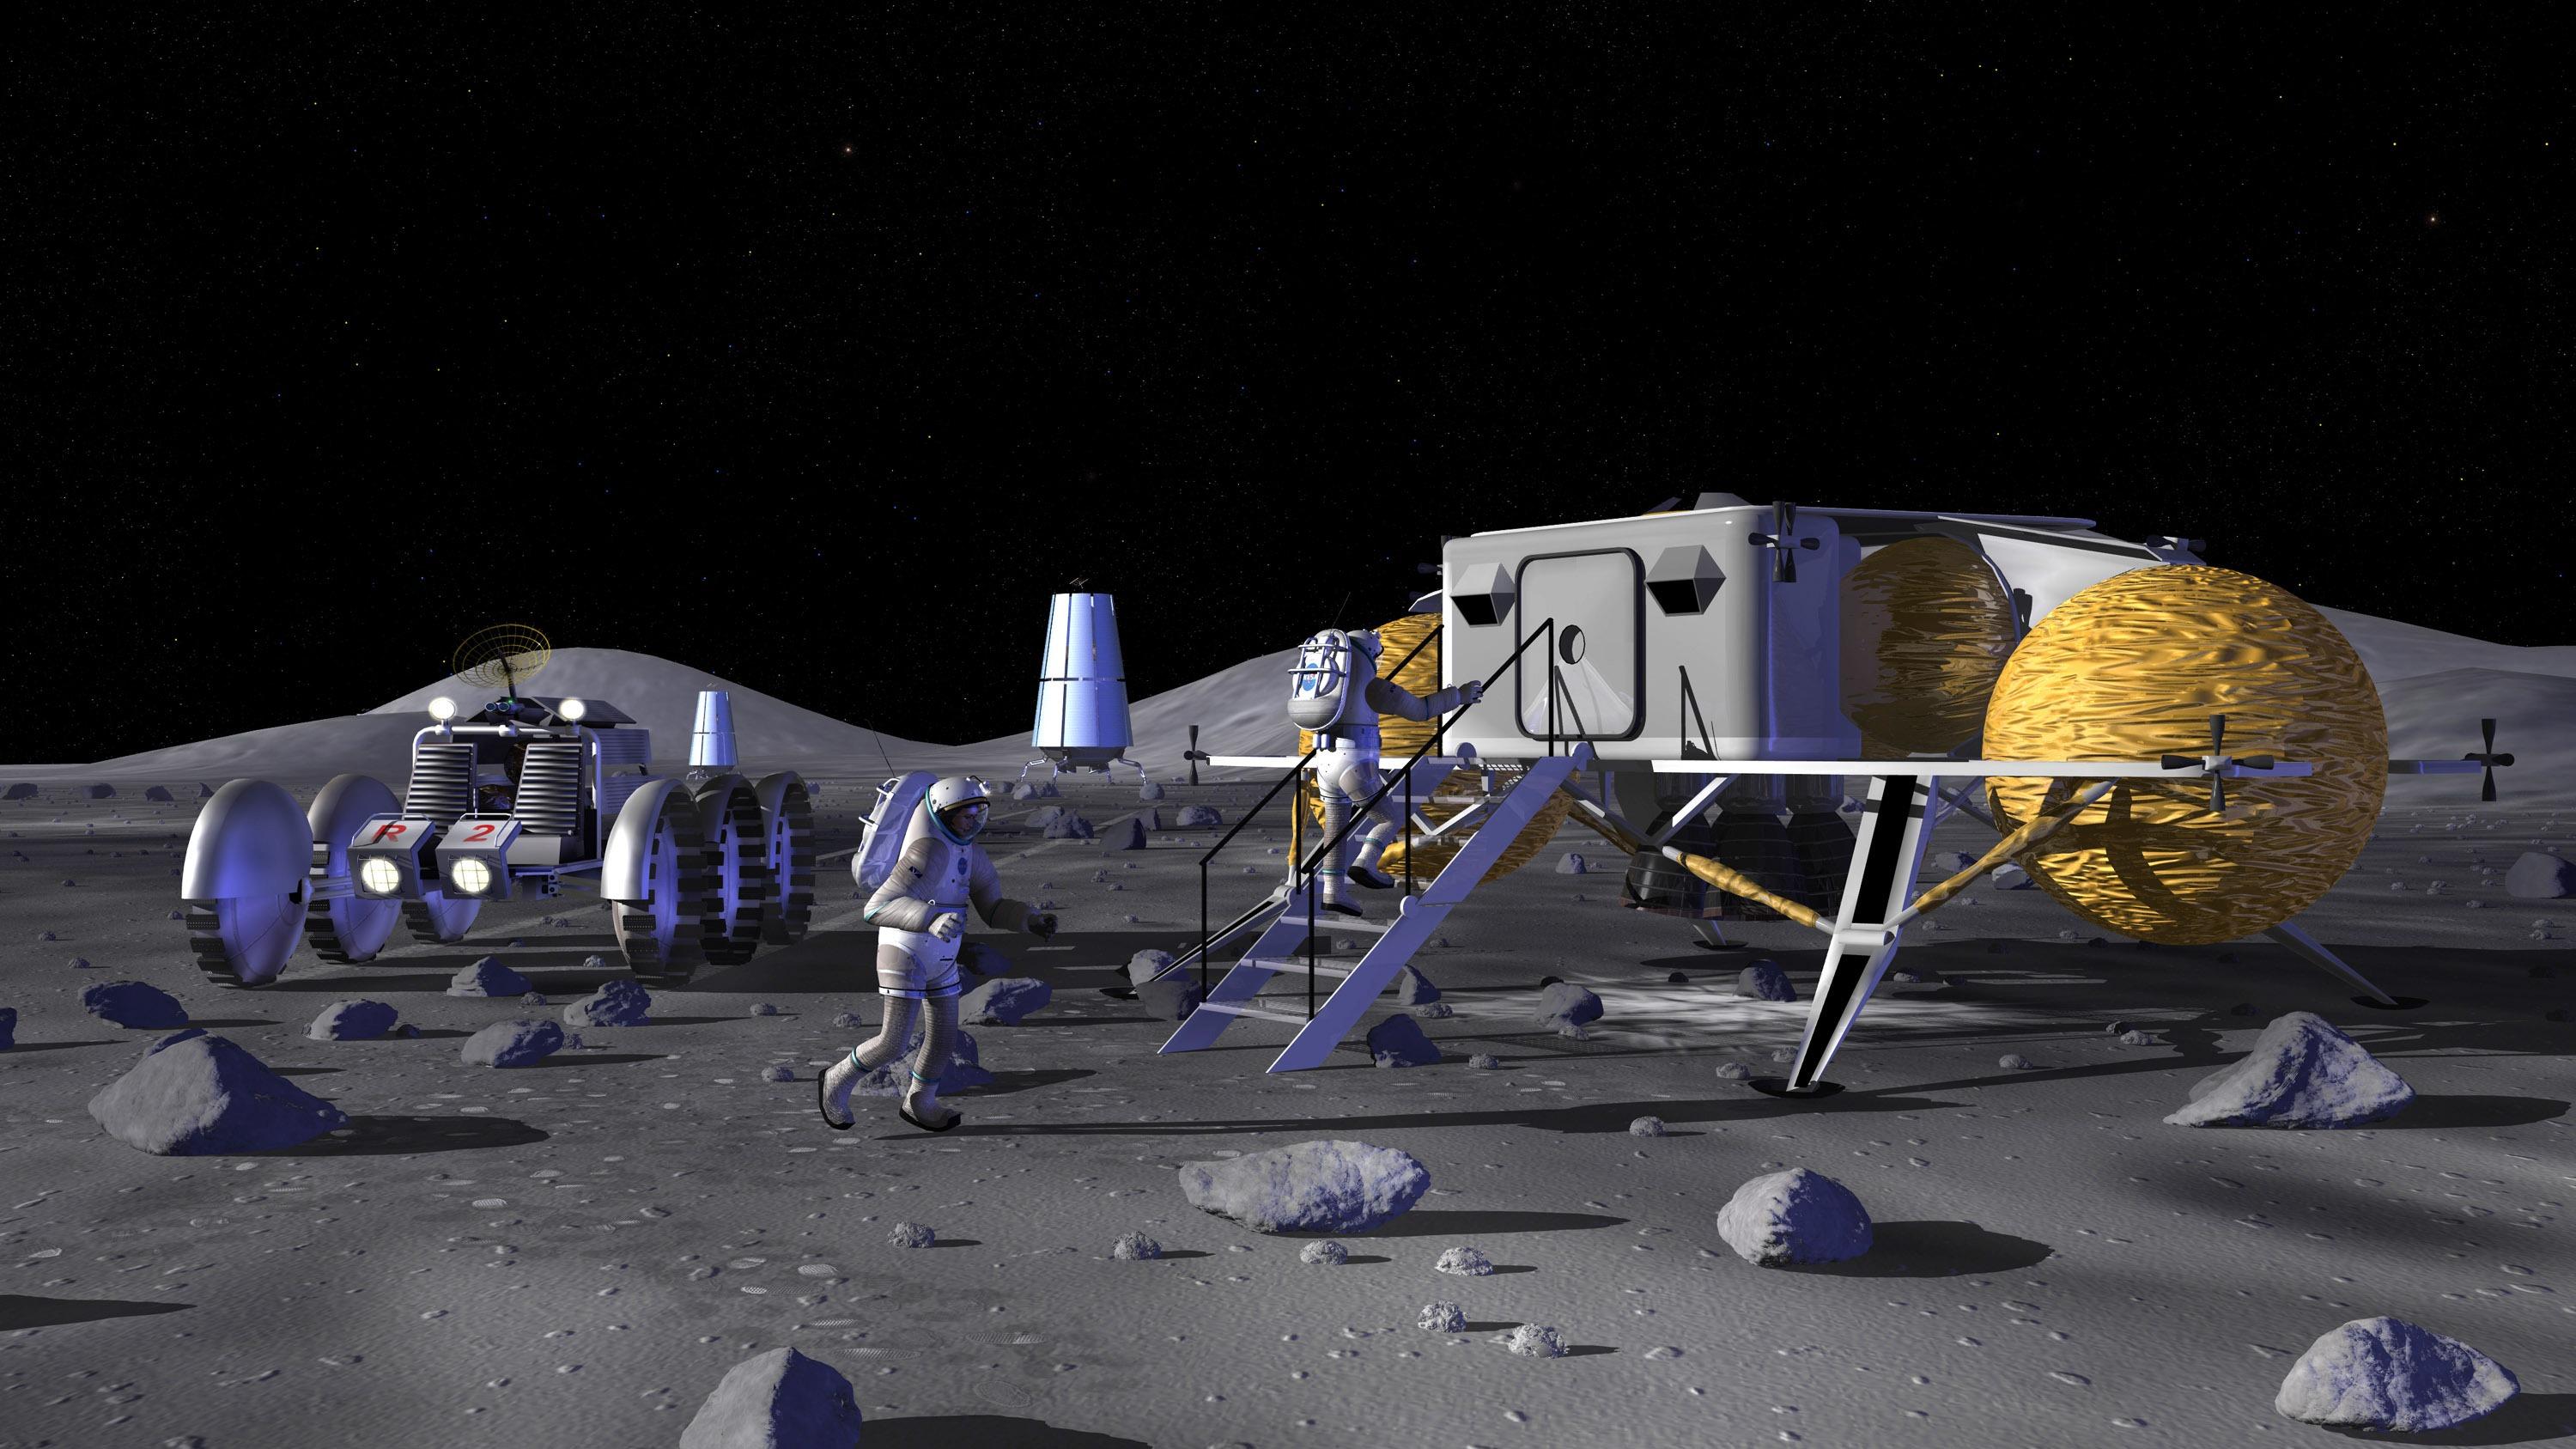 针对探月,中俄双方的中远期目标都是载人登月,建立月球基地,长期定居